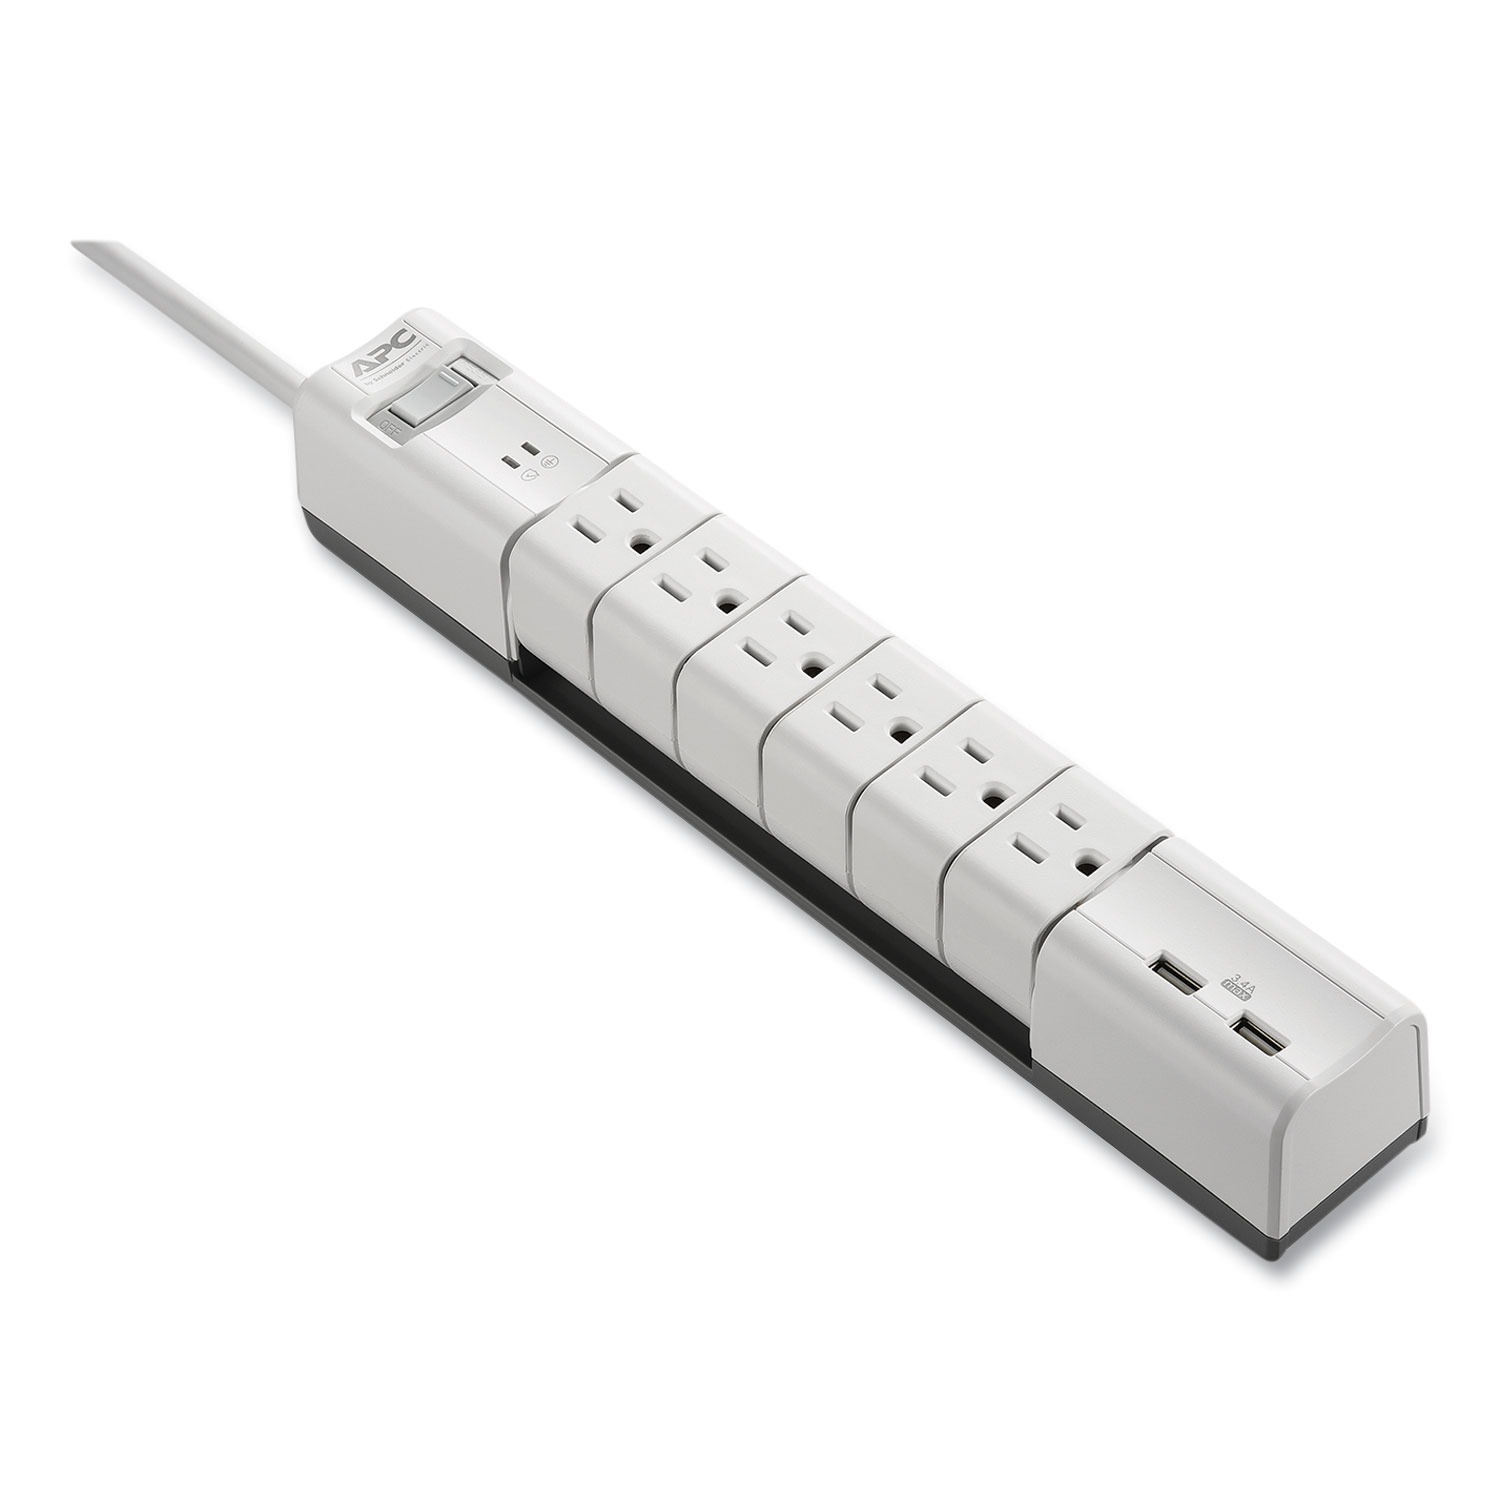 APC® Essential SurgeArrest Surge Protector, 6 AC/2 USB Outlets, 6 ft Cord, 1080 J, White